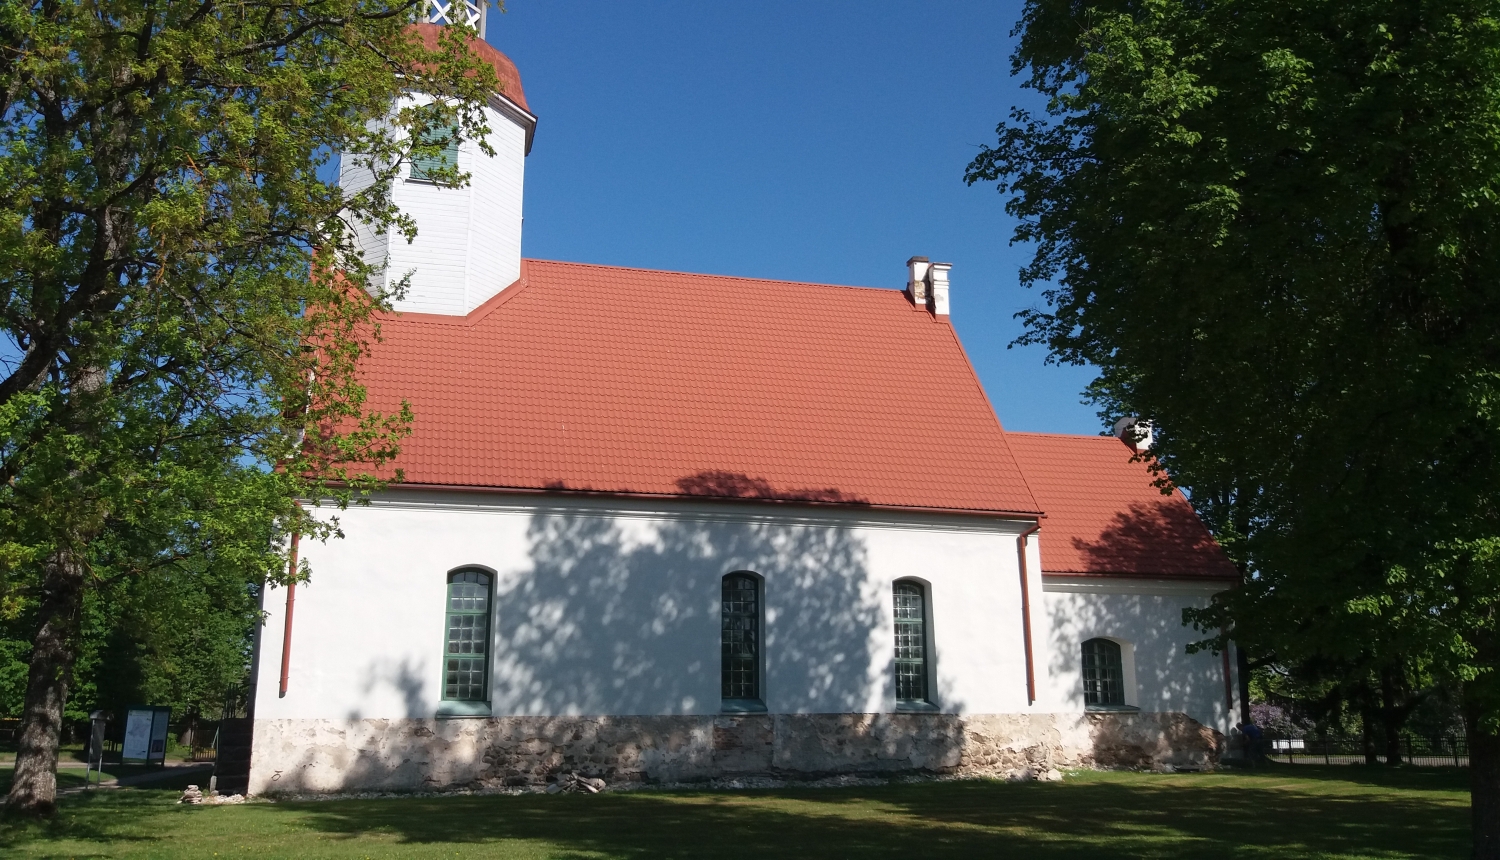 Ir sākušies Valkas – Lugažu evaņģēliski luteriskās baznīcas pamatu atjaunošanas būvdarbi